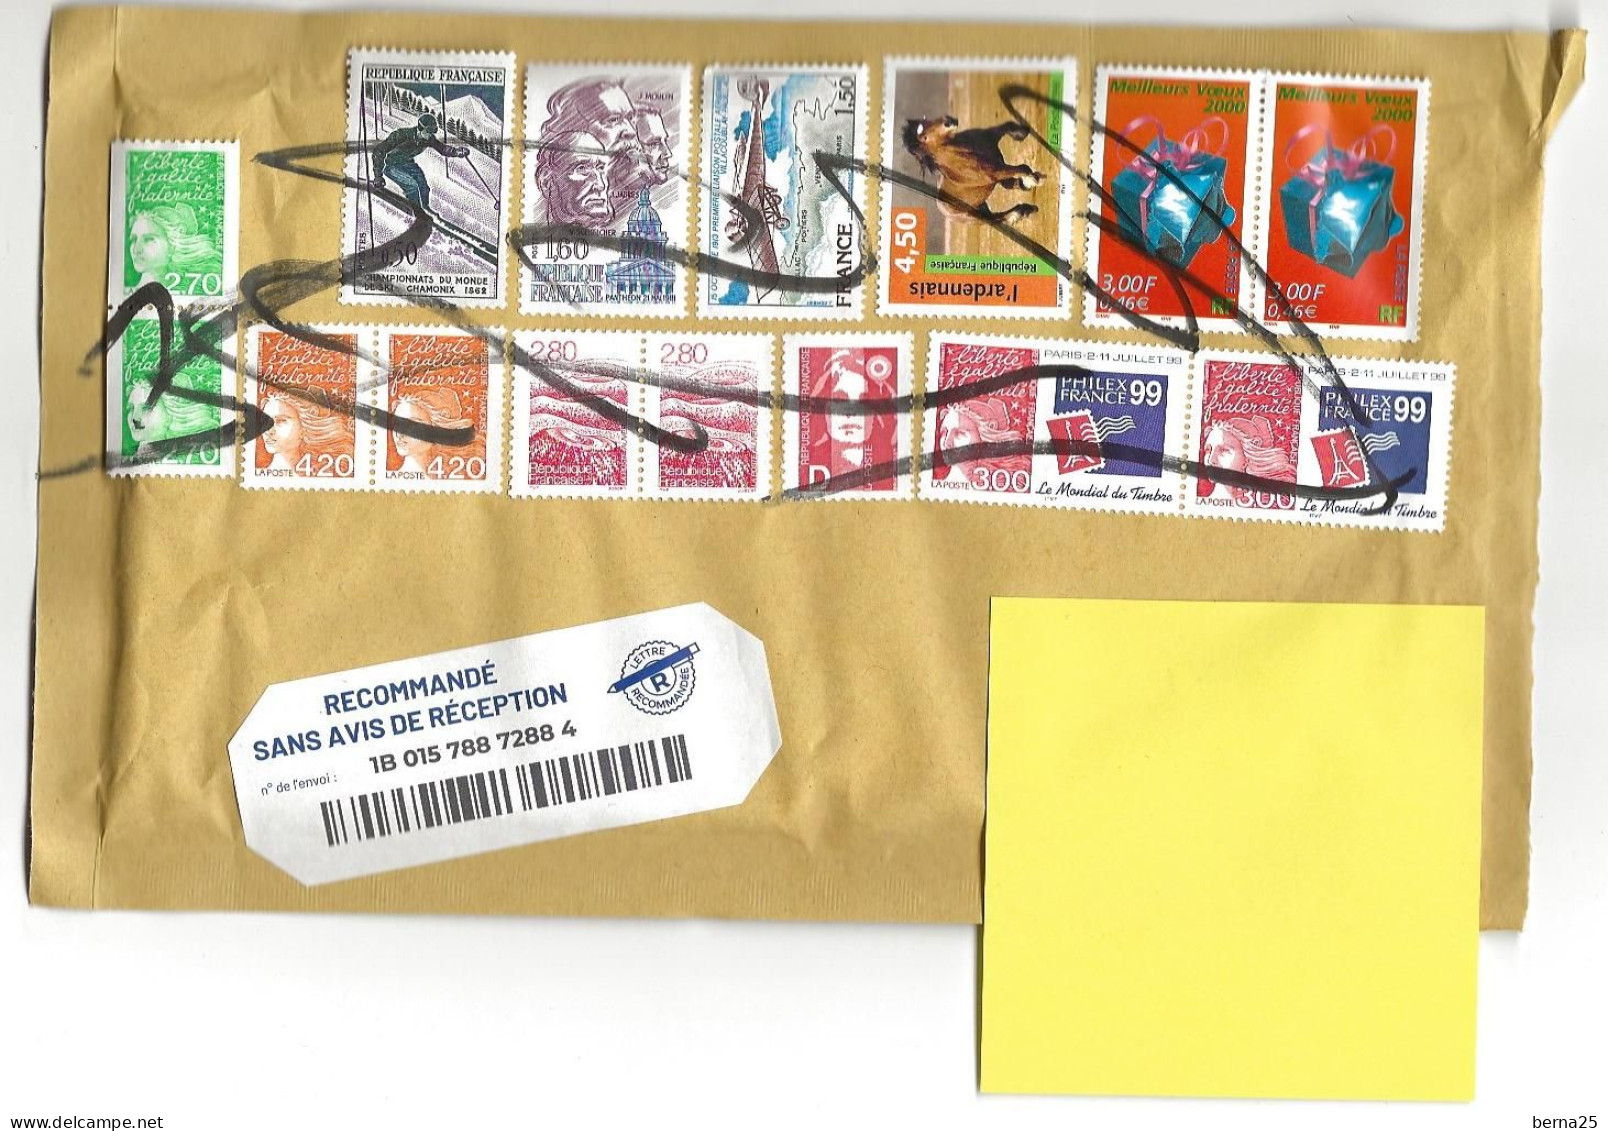 CENTRE DU COURRIER DES FINS PRES MORTEAU DANS LE DOUBS SUPERBE OBLITERATION MANUELLE A VOIR! - Used Stamps